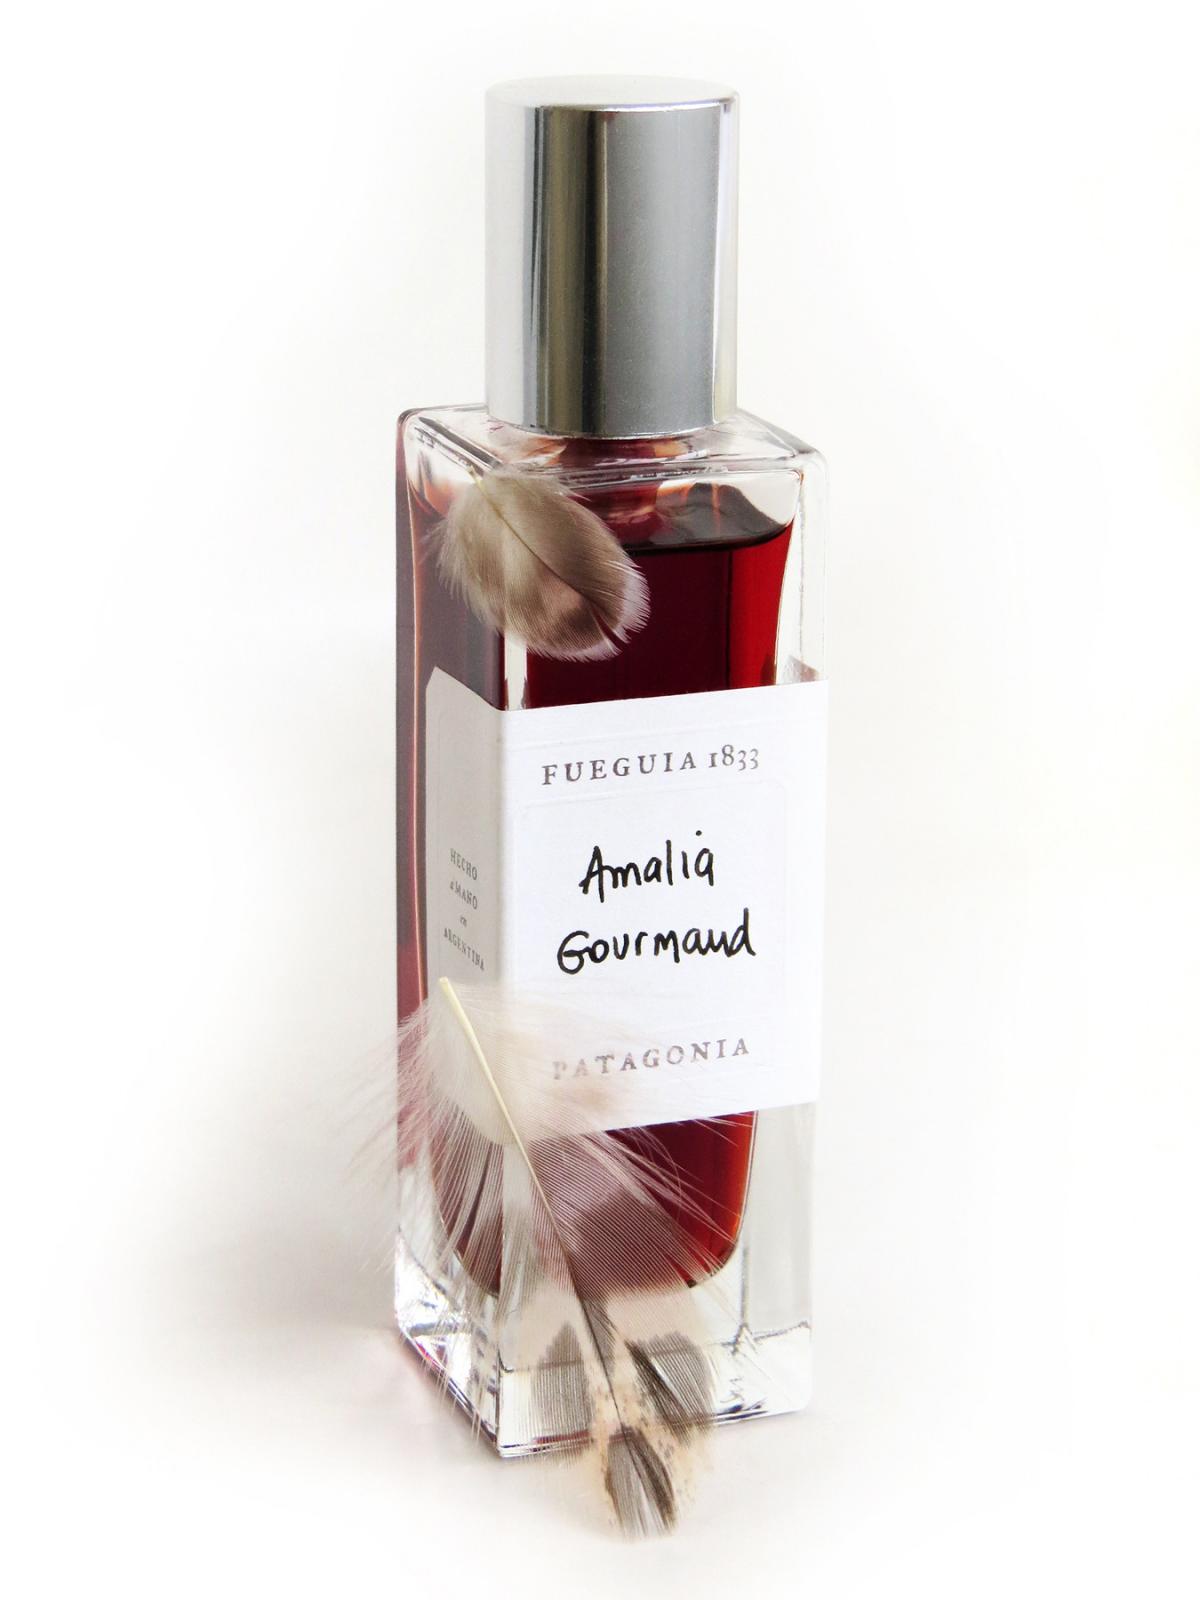 Amalia Gourmand Fueguia 1833 perfume - a fragrância Compartilhável